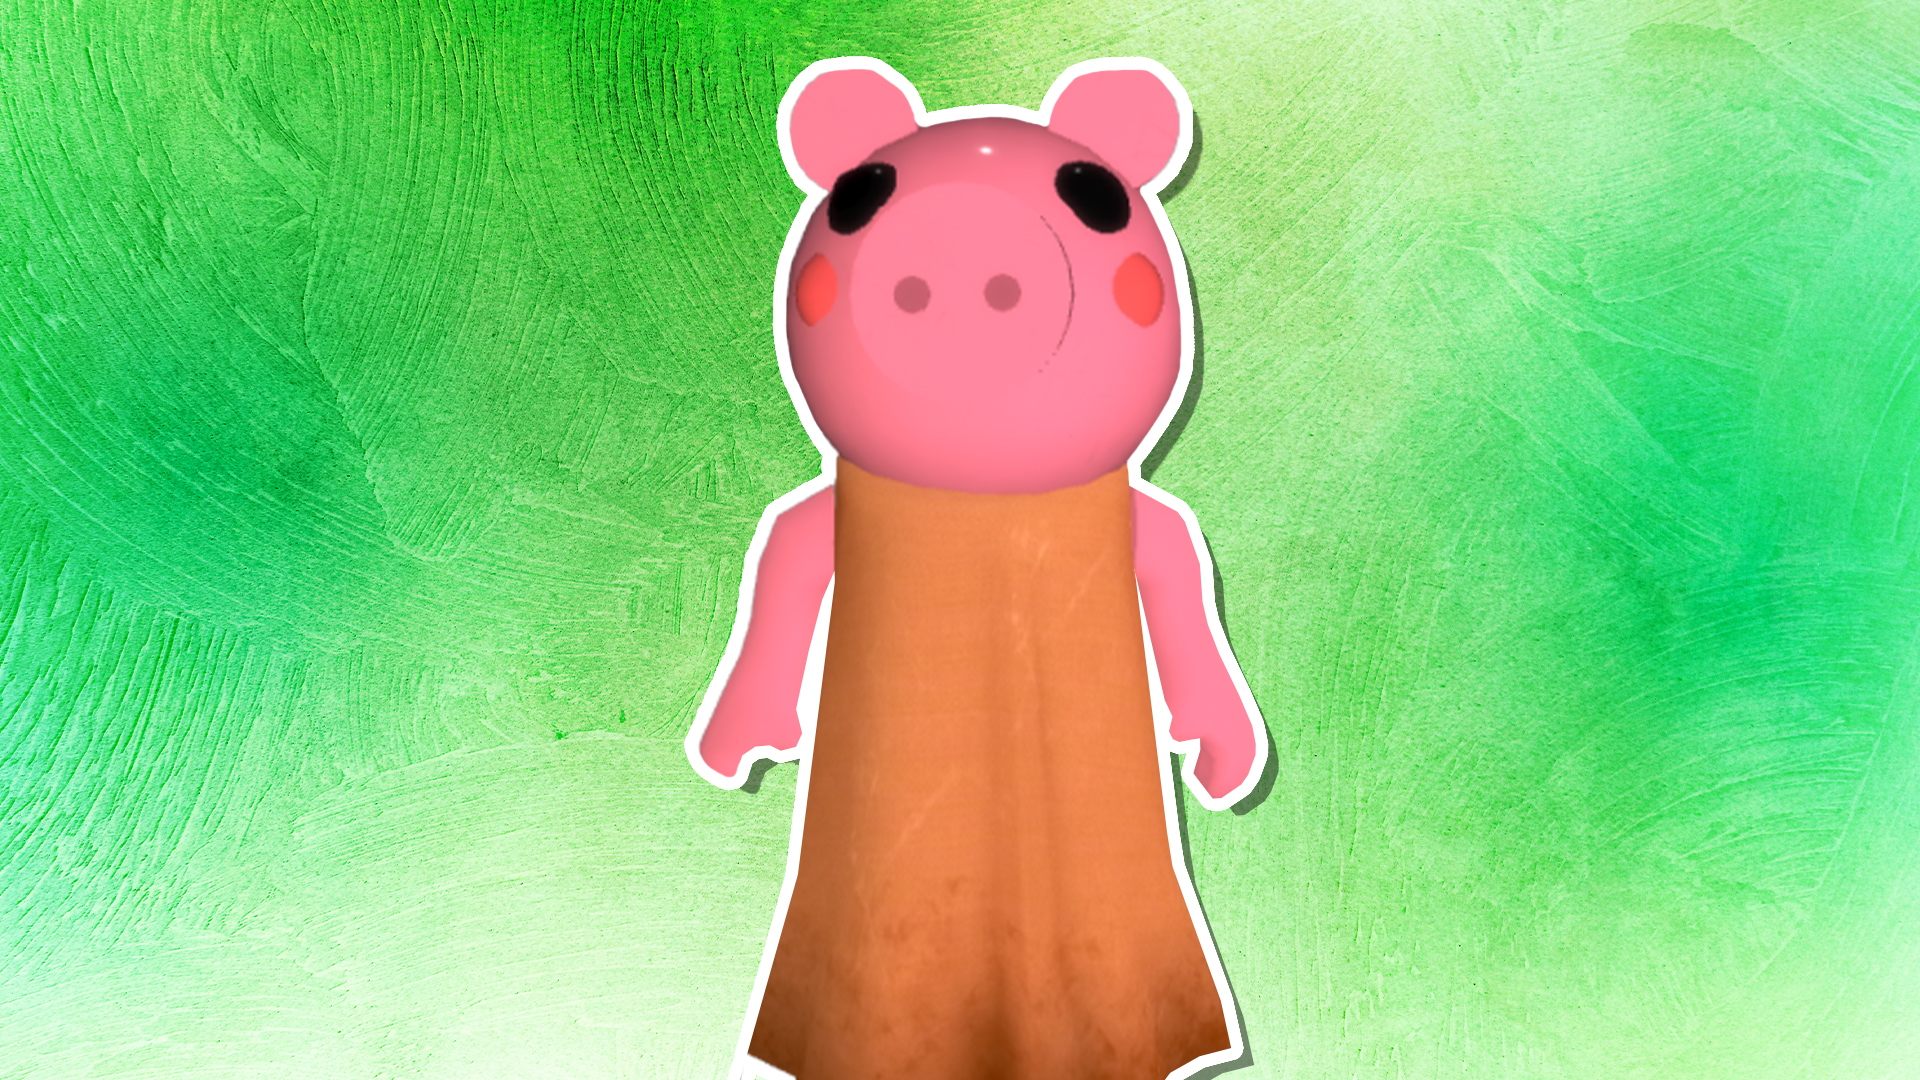 A Piggy character